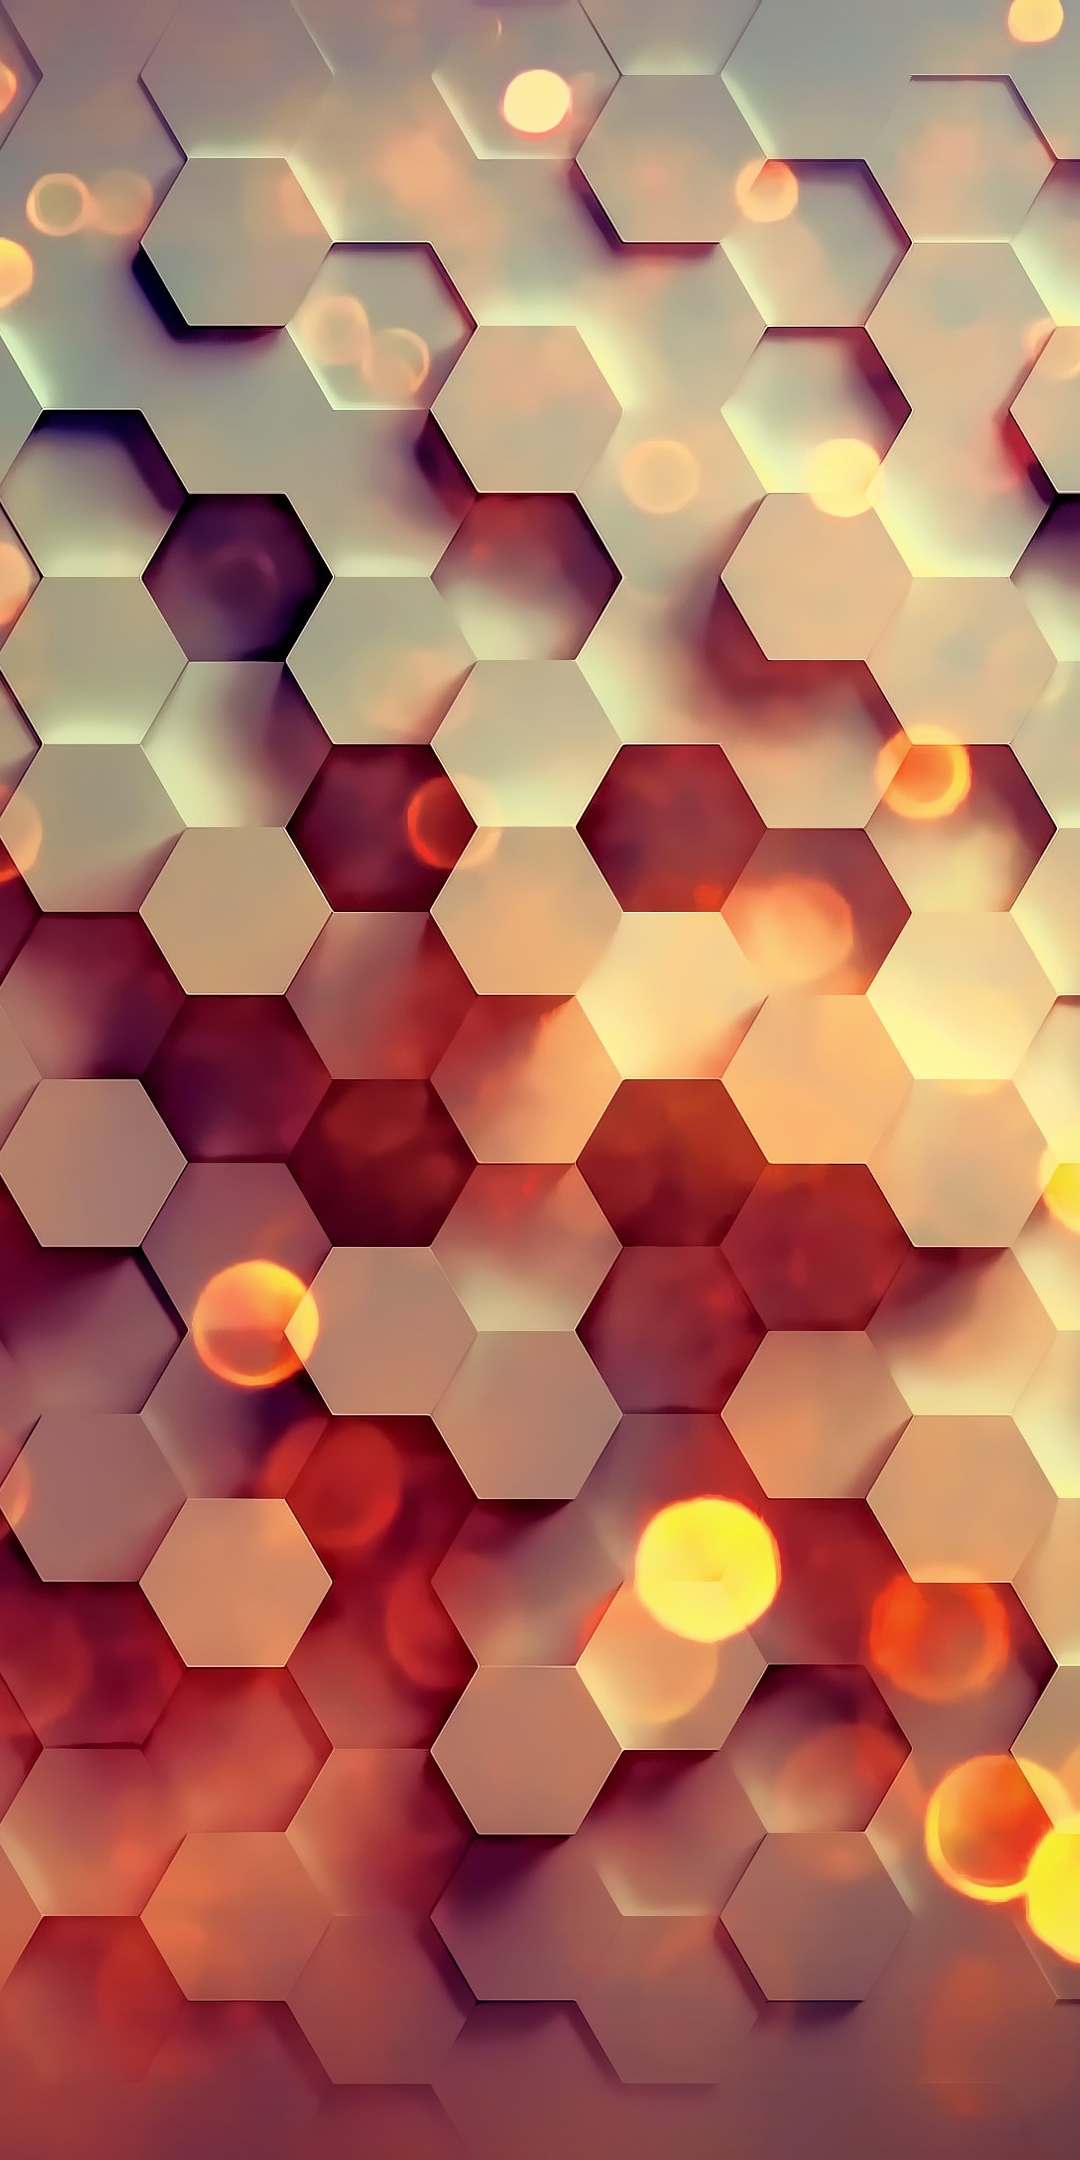 3d, hexagons, pattern, abstract, 1080x2160 wallpaper